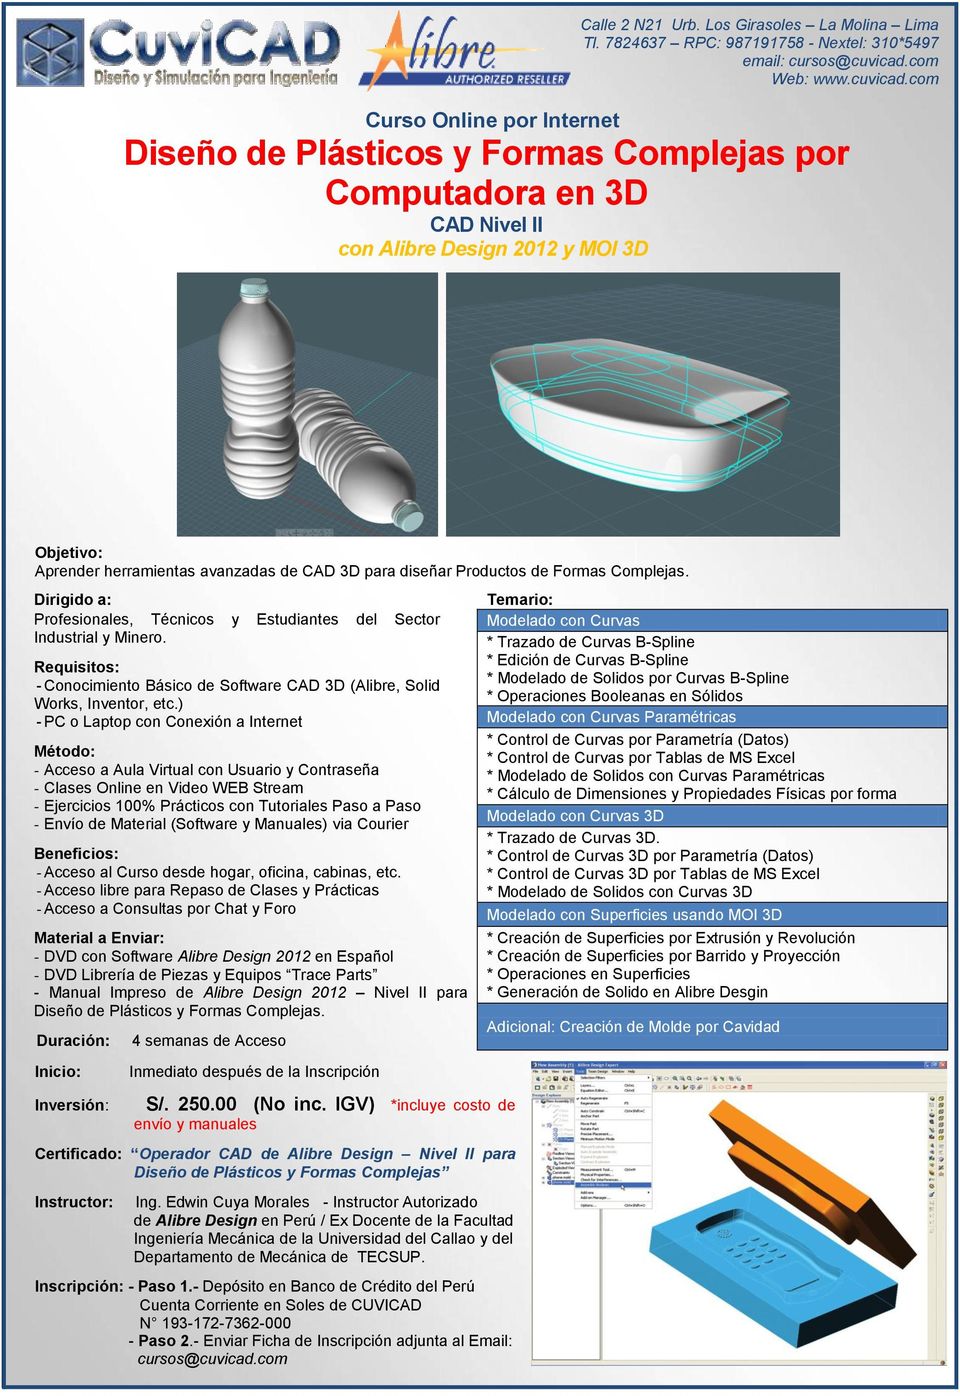 ) - Manual Impreso de Alibre Design 2012 Nivel II para Diseño de Plásticos y Formas Complejas.